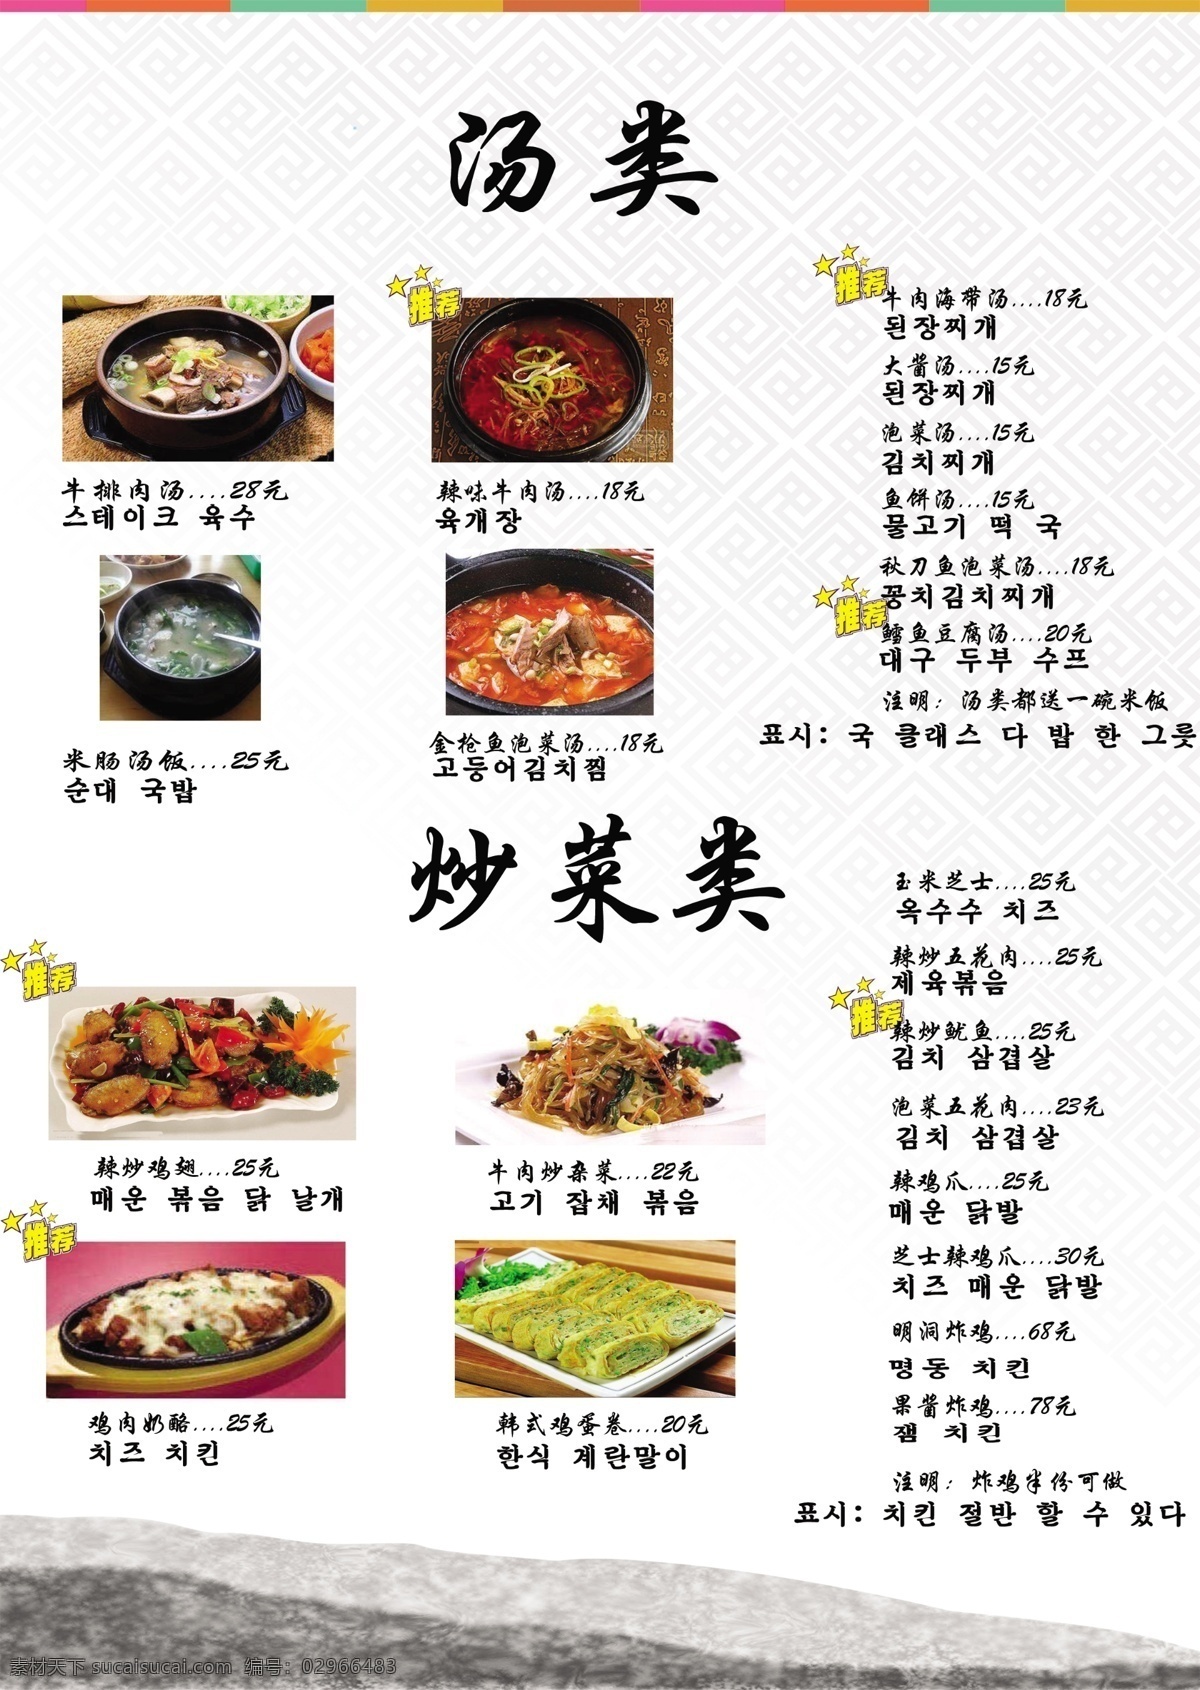 韩国汤类 炒菜类 韩国 韩国风 特色 食品 菜谱 名单 菜 韩语 菜名 饮料 菜单菜谱 白色